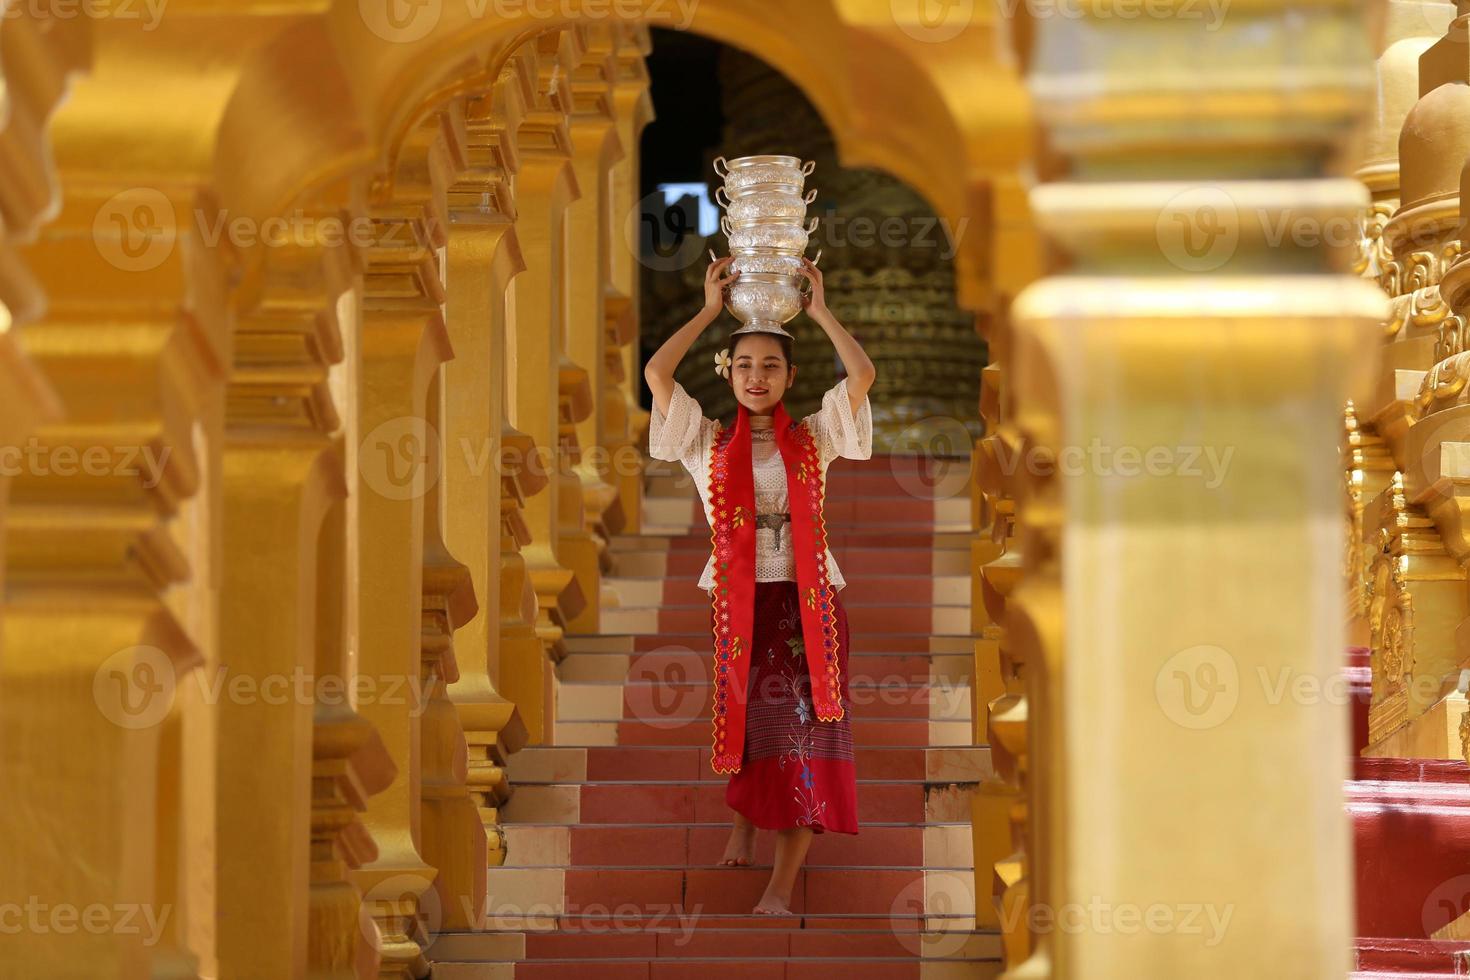 giovane ragazza asiatica in costume tradizionale birmano che tiene una ciotola di riso a portata di mano alla pagoda dorata nel tempio del myanmar. donne del Myanmar che tengono fiori con abiti tradizionali birmani che visitano un tempio buddista foto